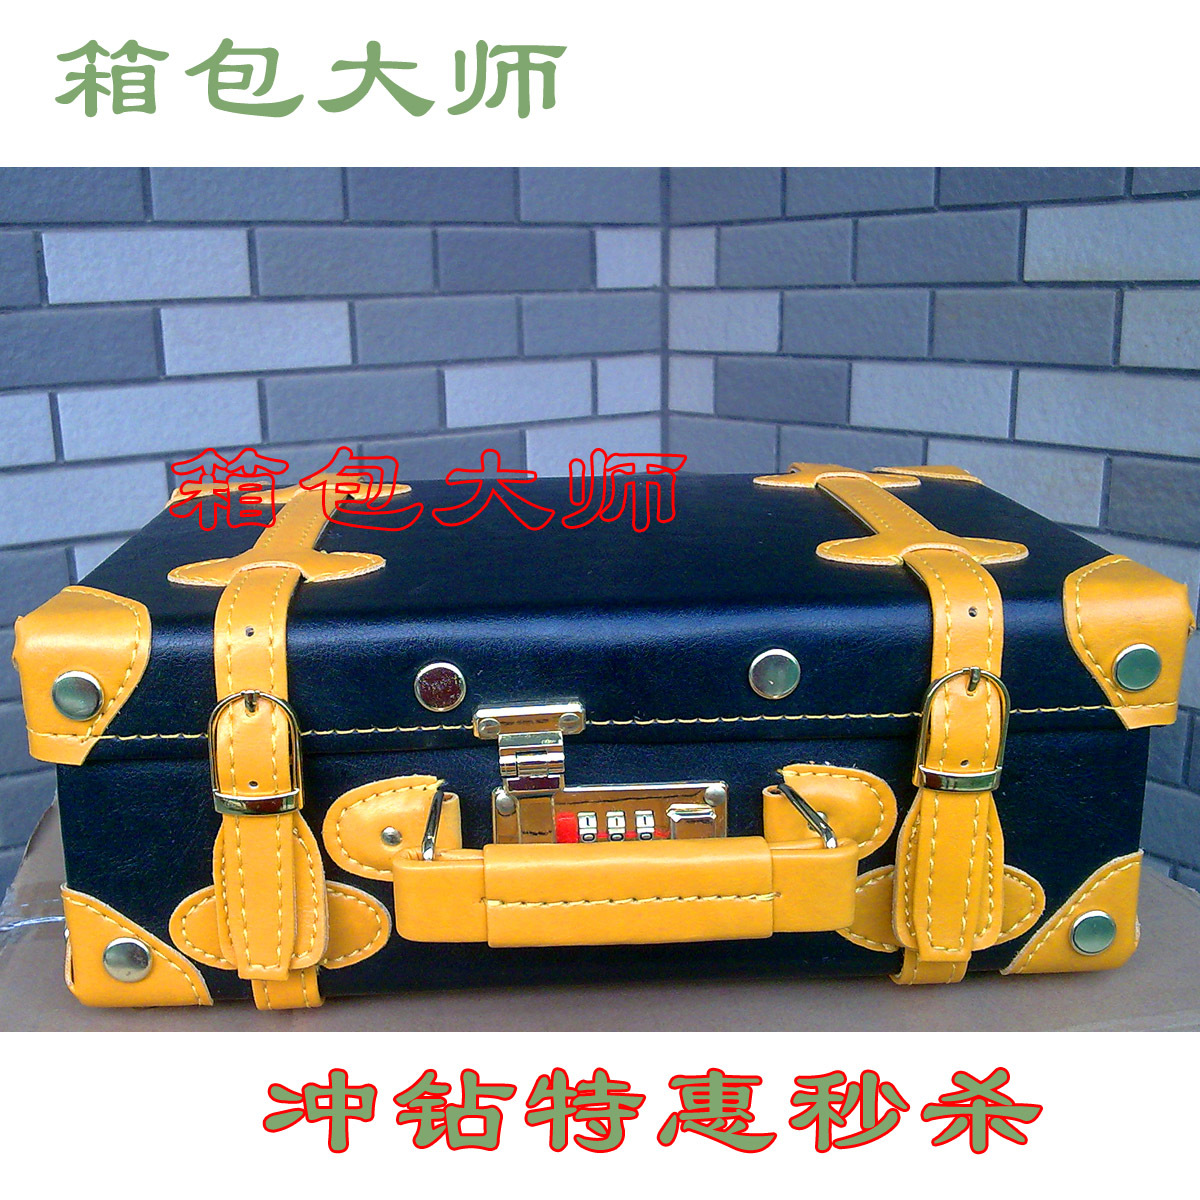 12寸黑色黄饰化妆箱出口日本可爱手提箱装扮必备皮箱冲钻特惠秒杀